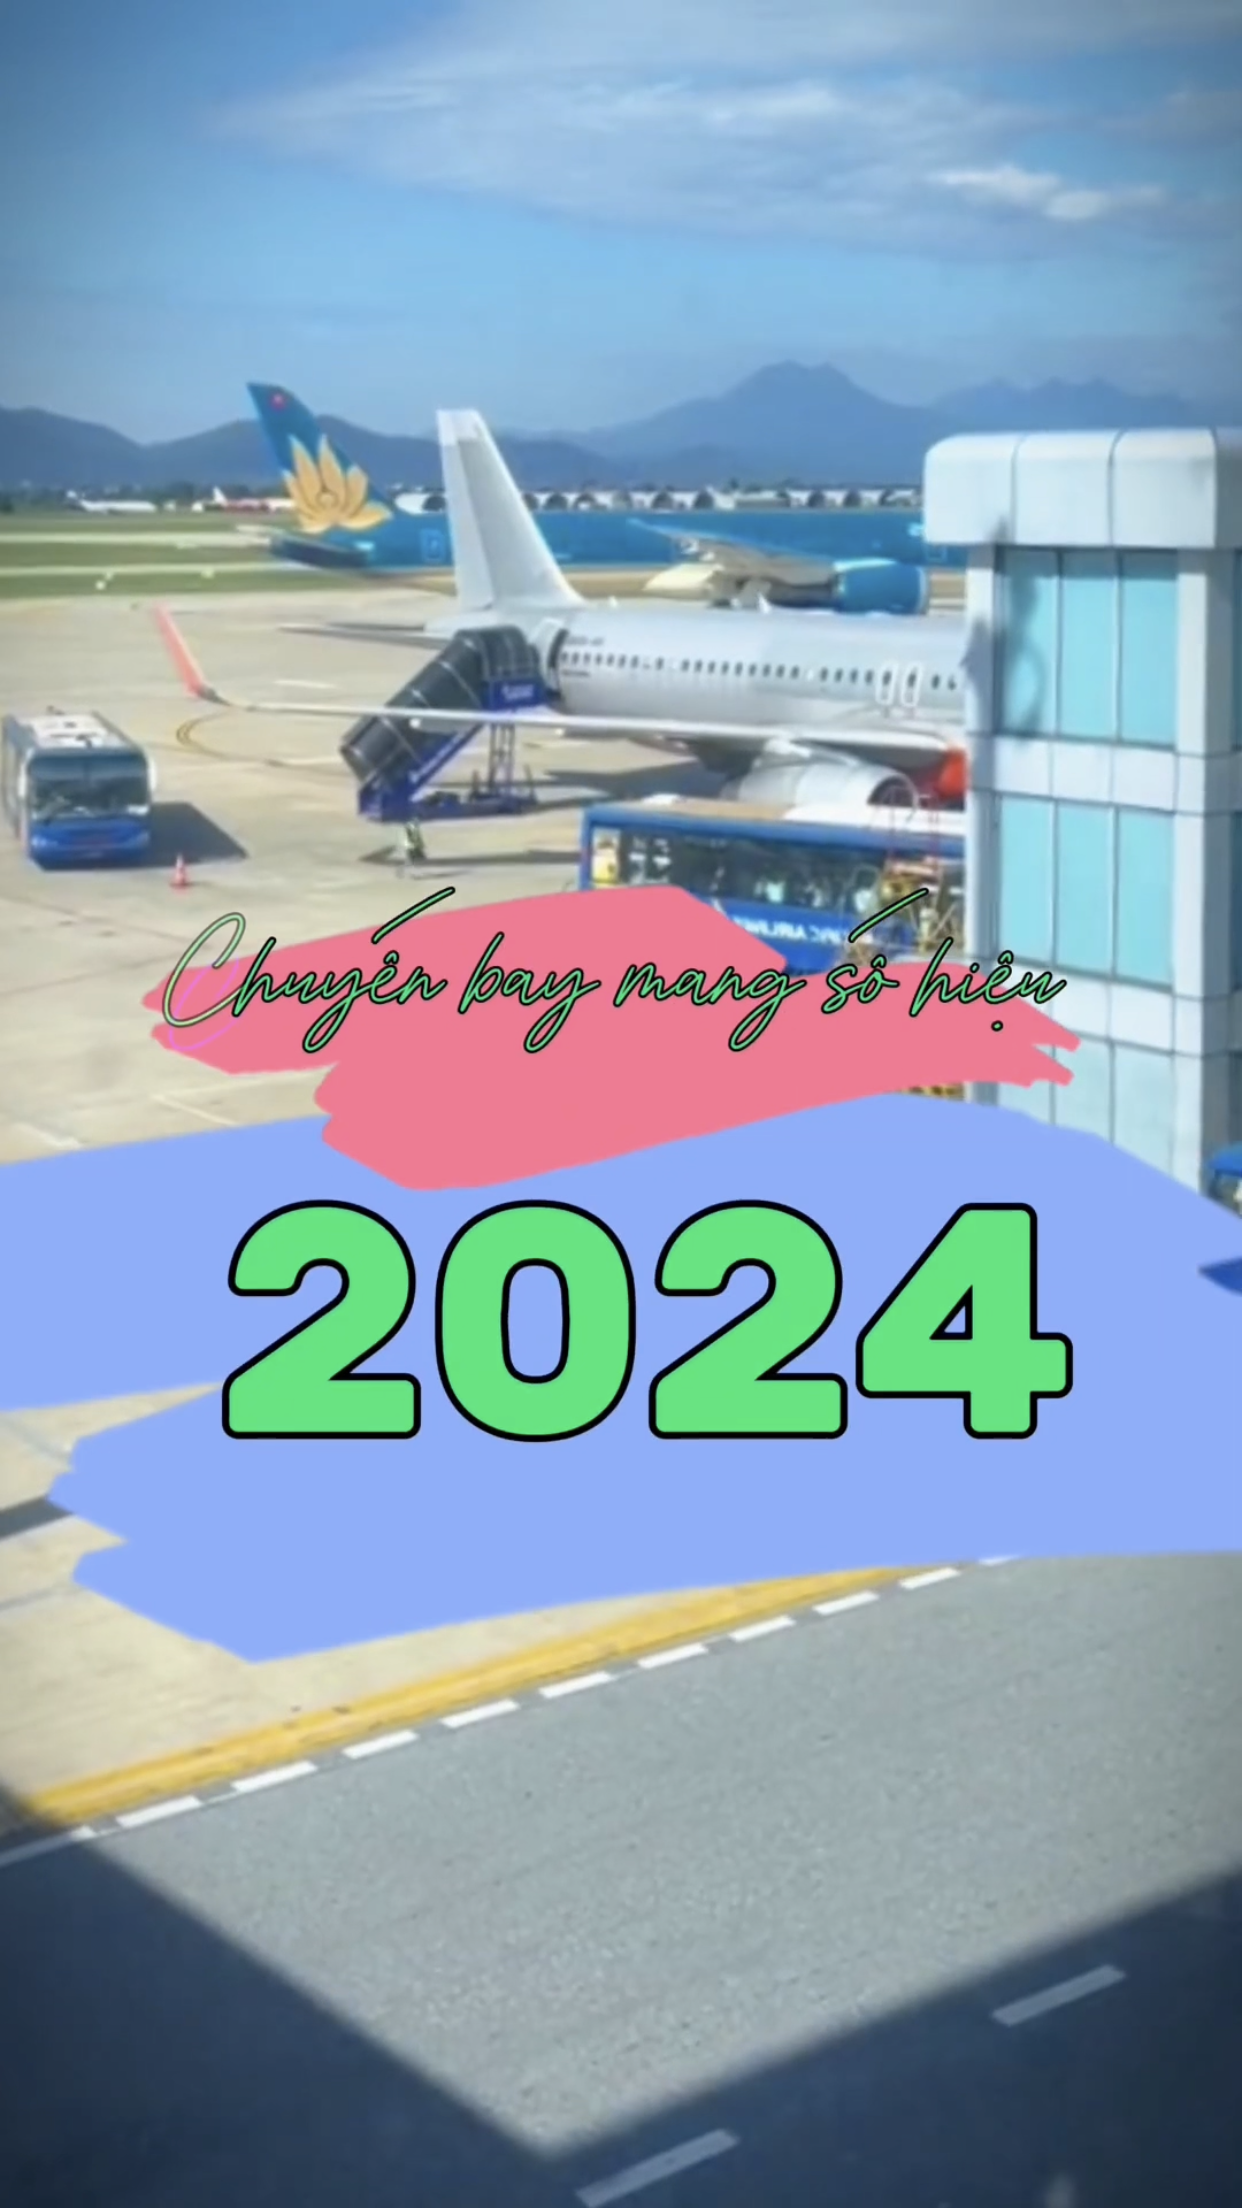 Chuyến bay mang số hiệu 2024 vui vẻ và hạnh phúc 1